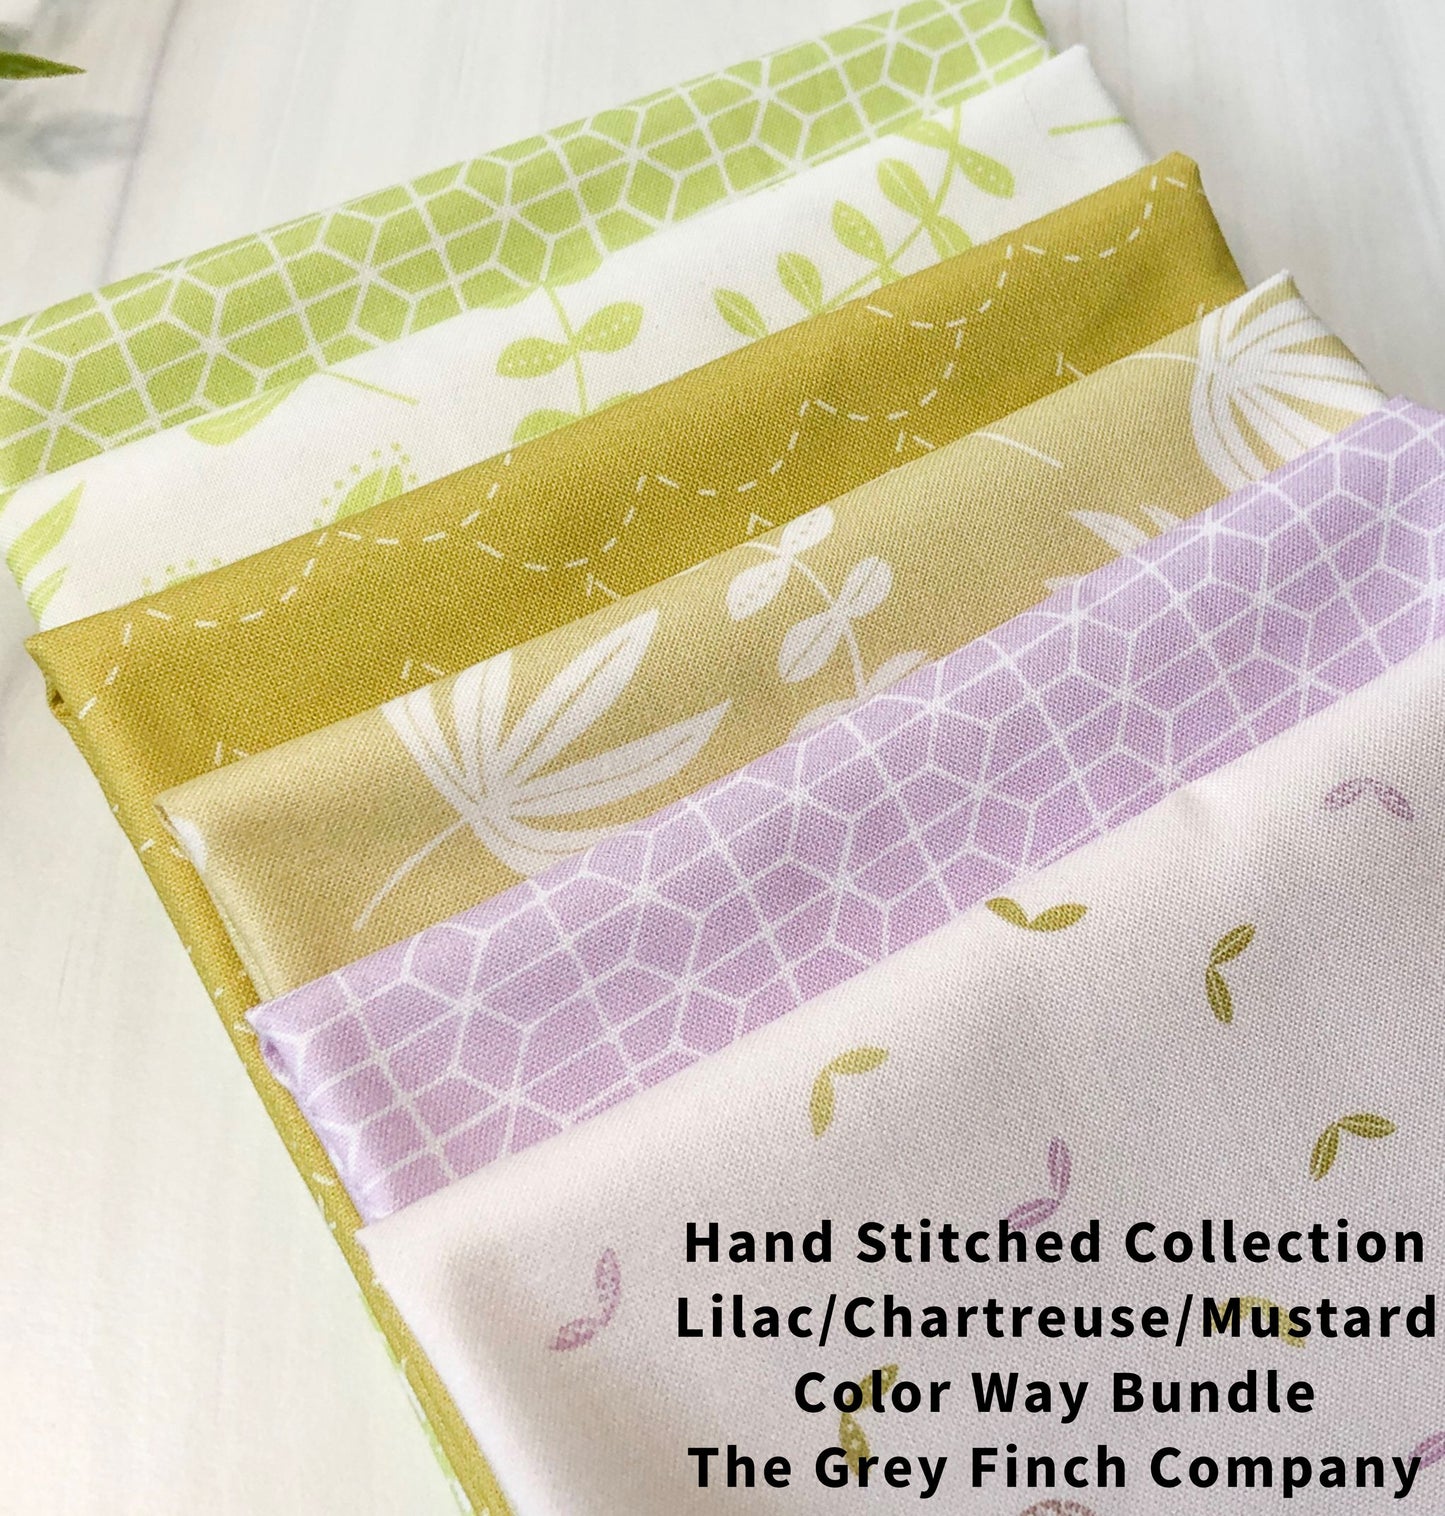 Hand Stitched Collection Bundles - 3 Color away Option Mini Bundles - Figo Fabrics - 100% Cotton